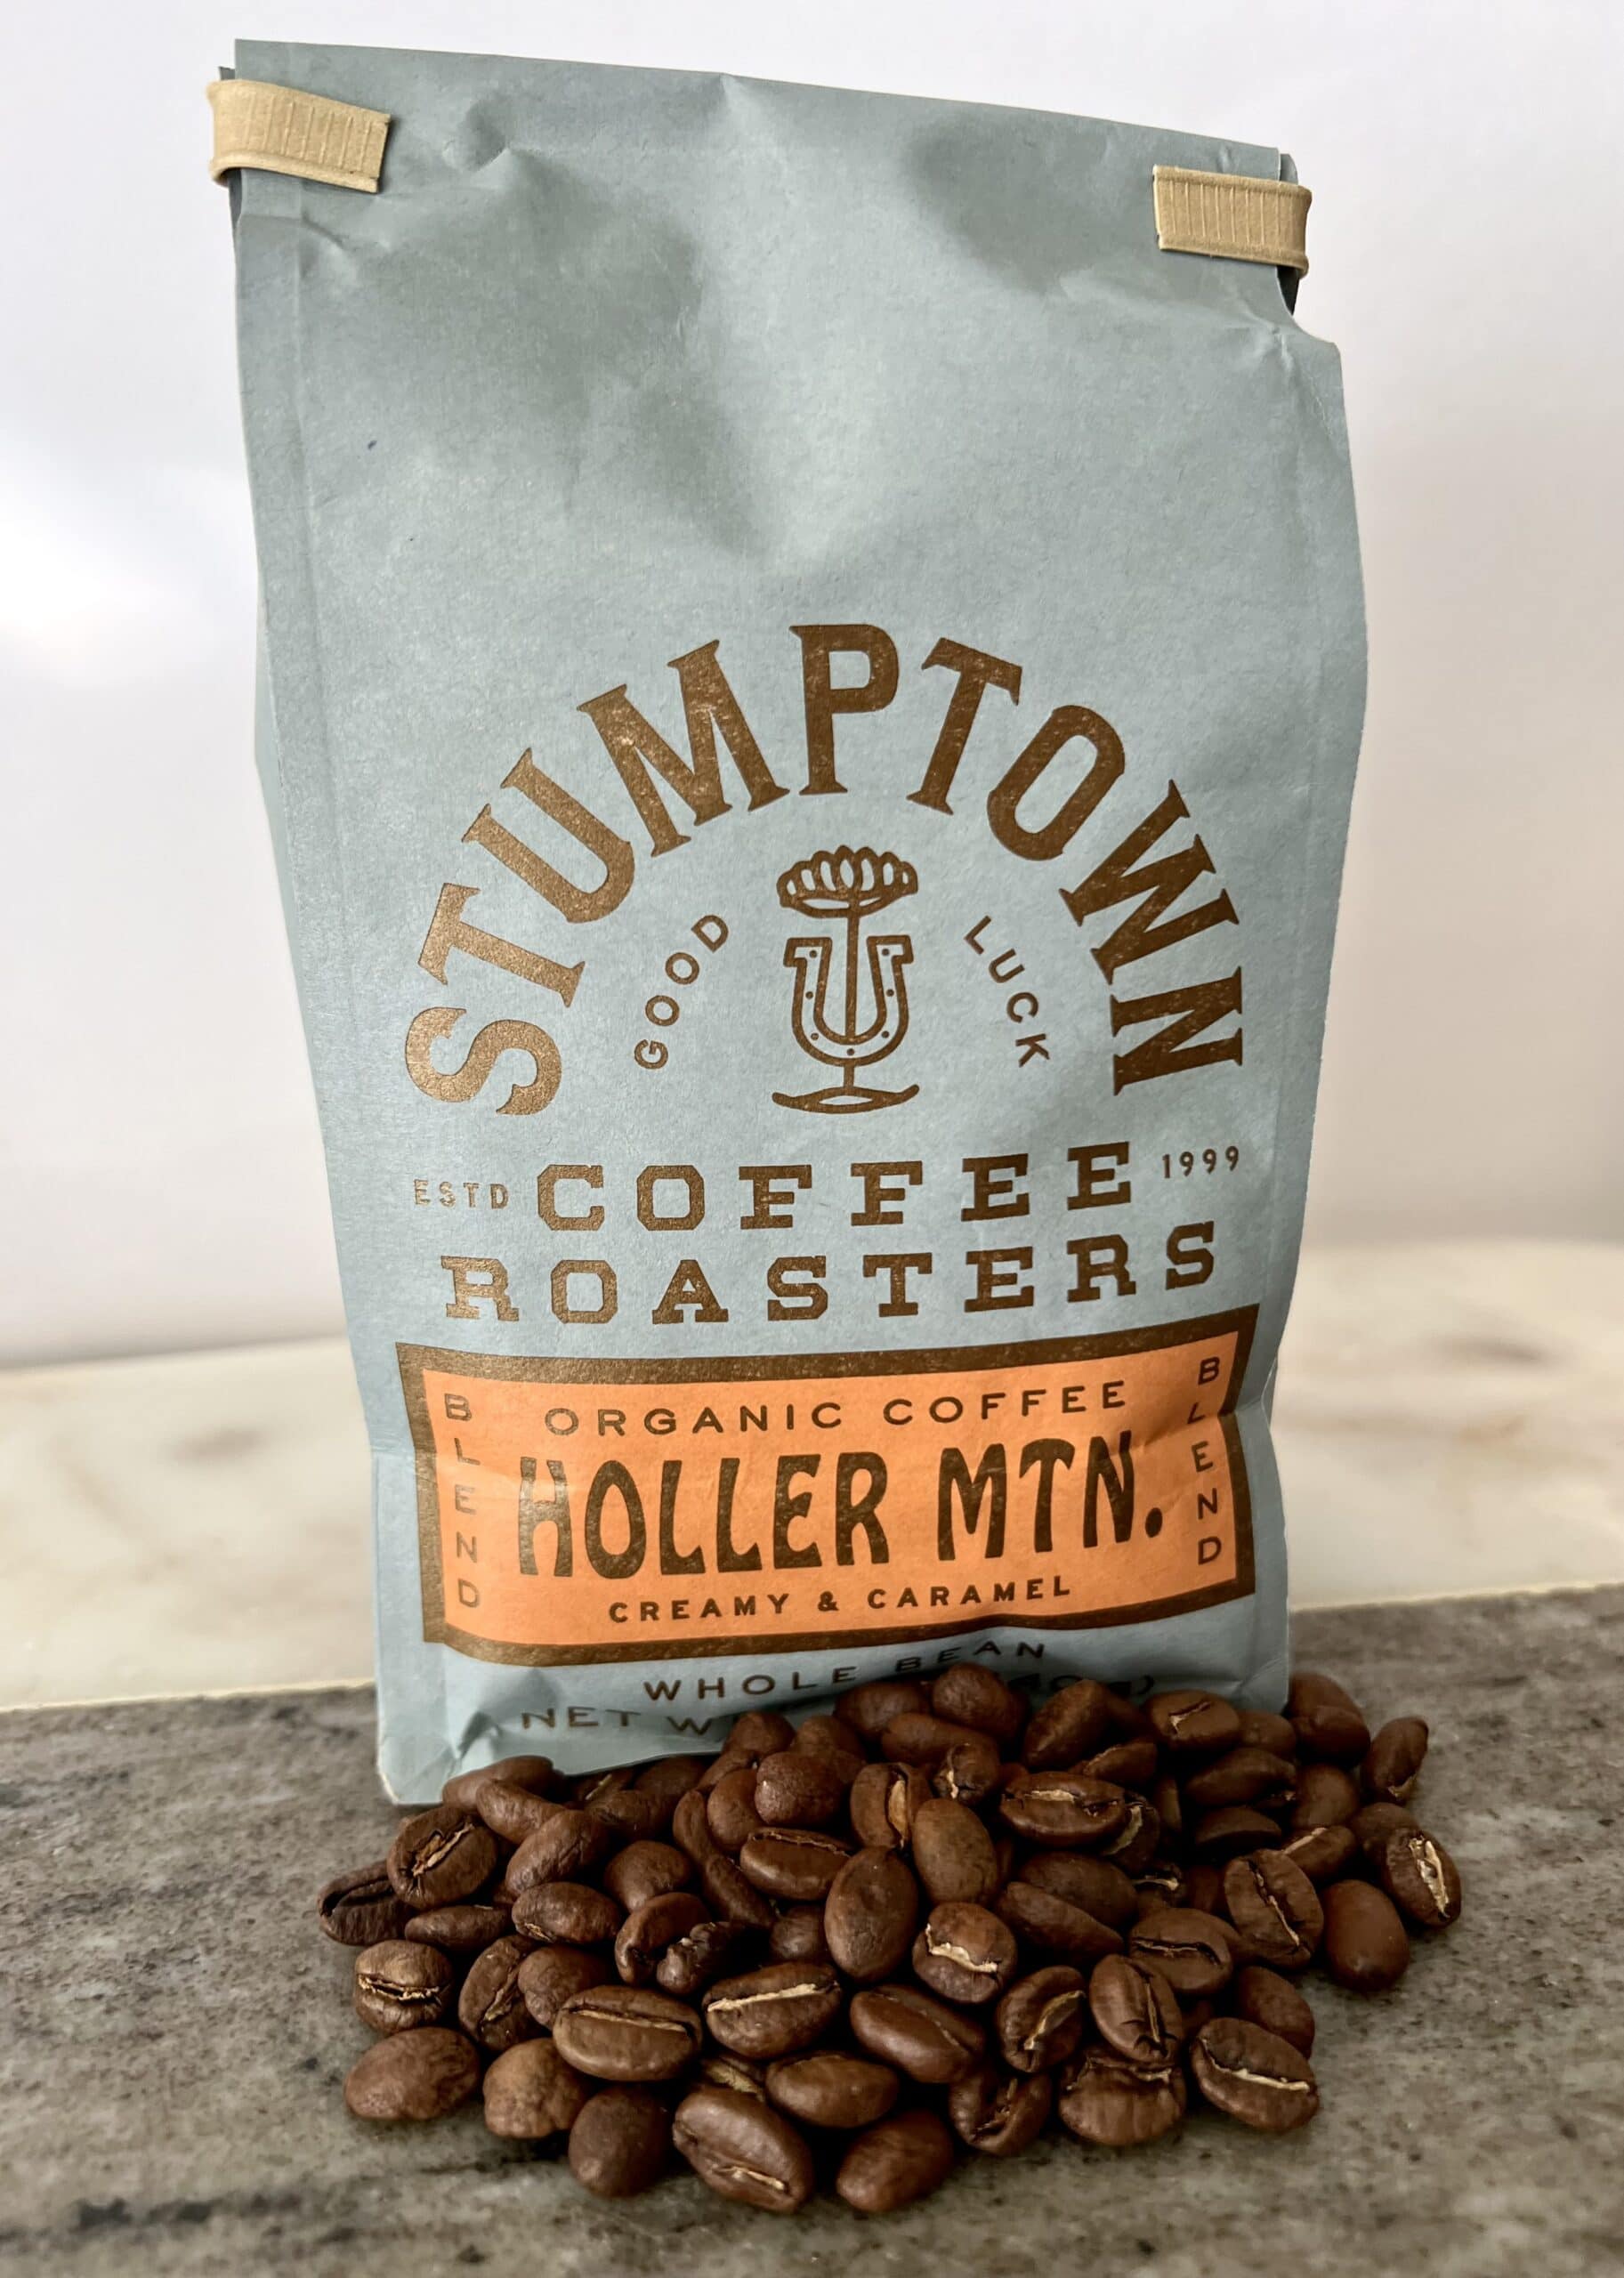 Holler山咖啡打包咖啡豆